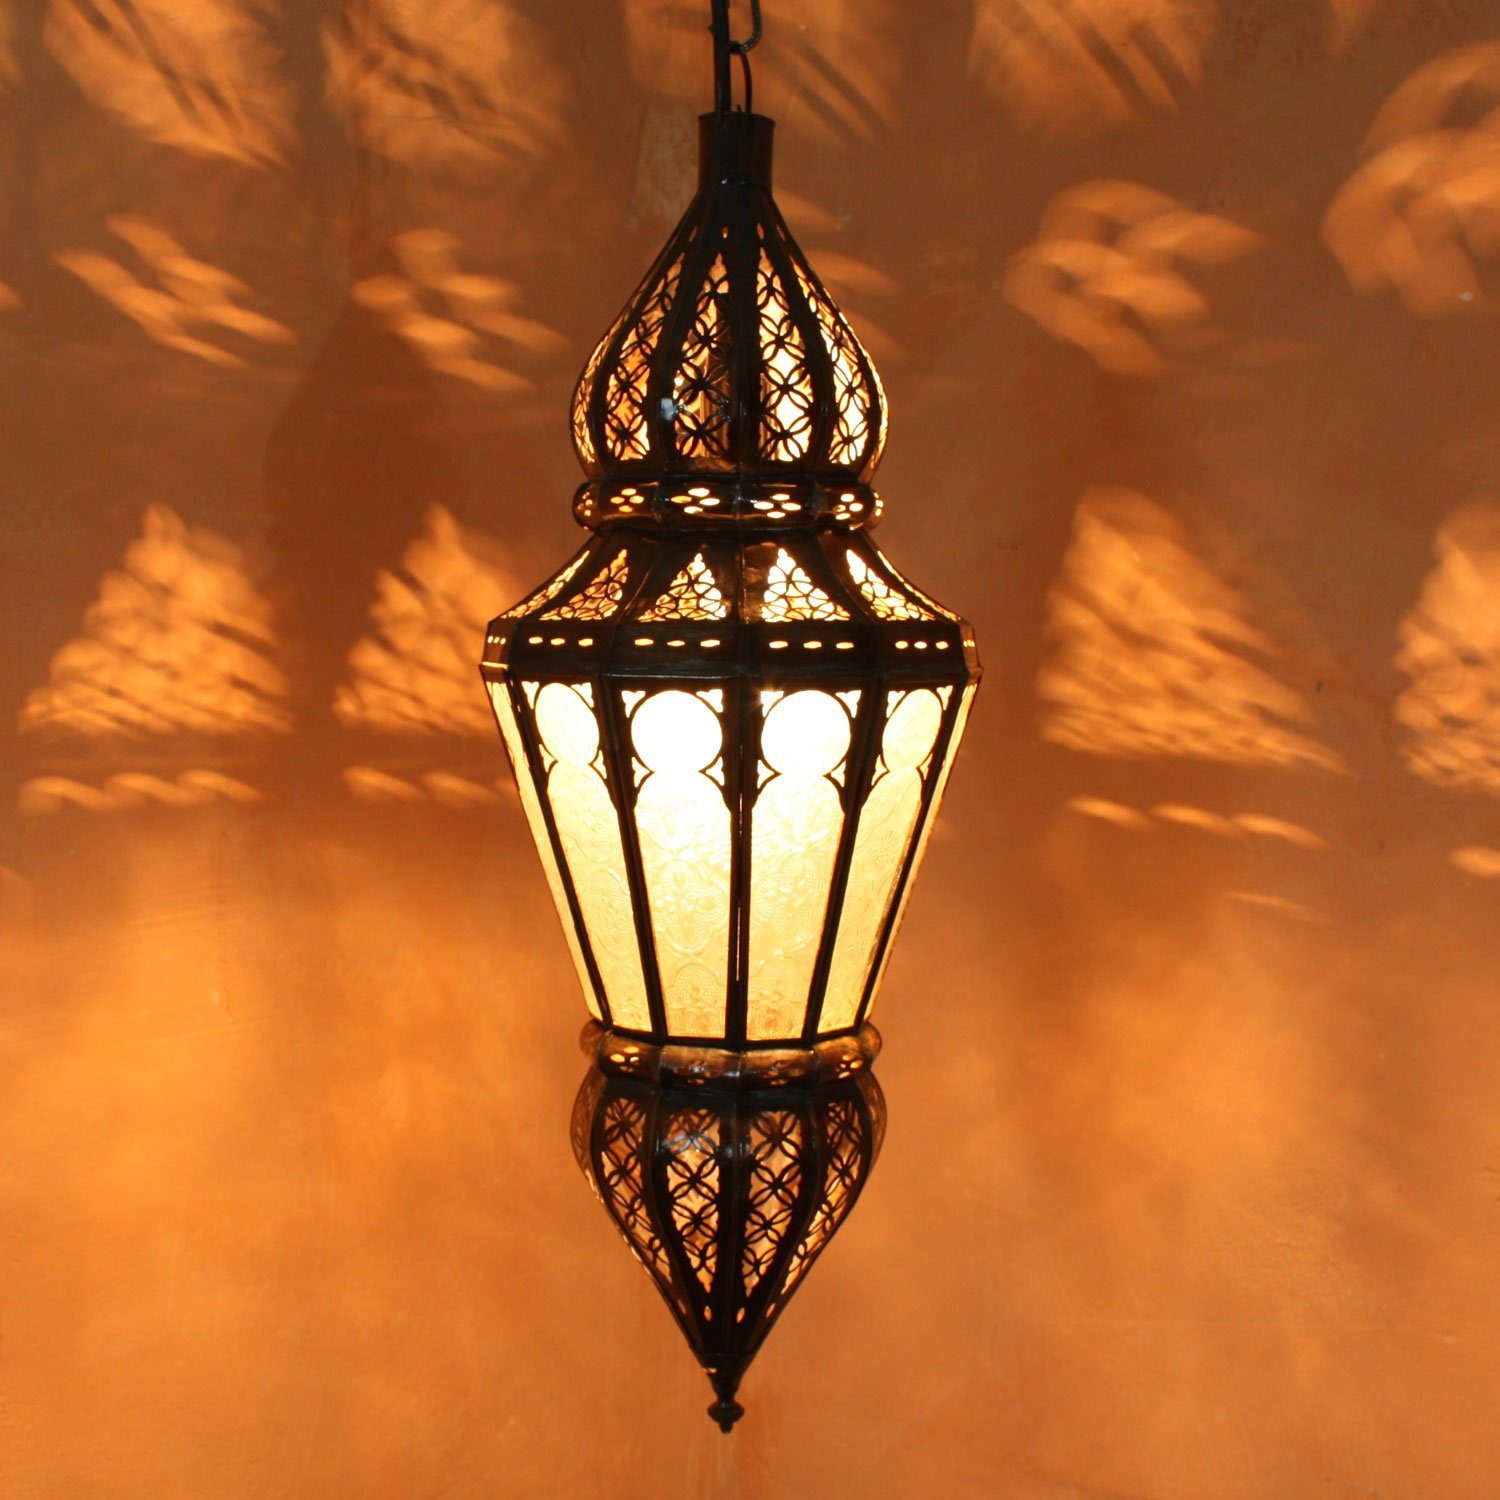 Casa Moro Deckenleuchte Orientalische Lampe marokkanische Hängelampe Nura Weiß Höhe 54 cm, aus Glas und Metall, ohne Leuchtmittel, Neutralweiß, Ramadan Leuchte aus Marokko L1215